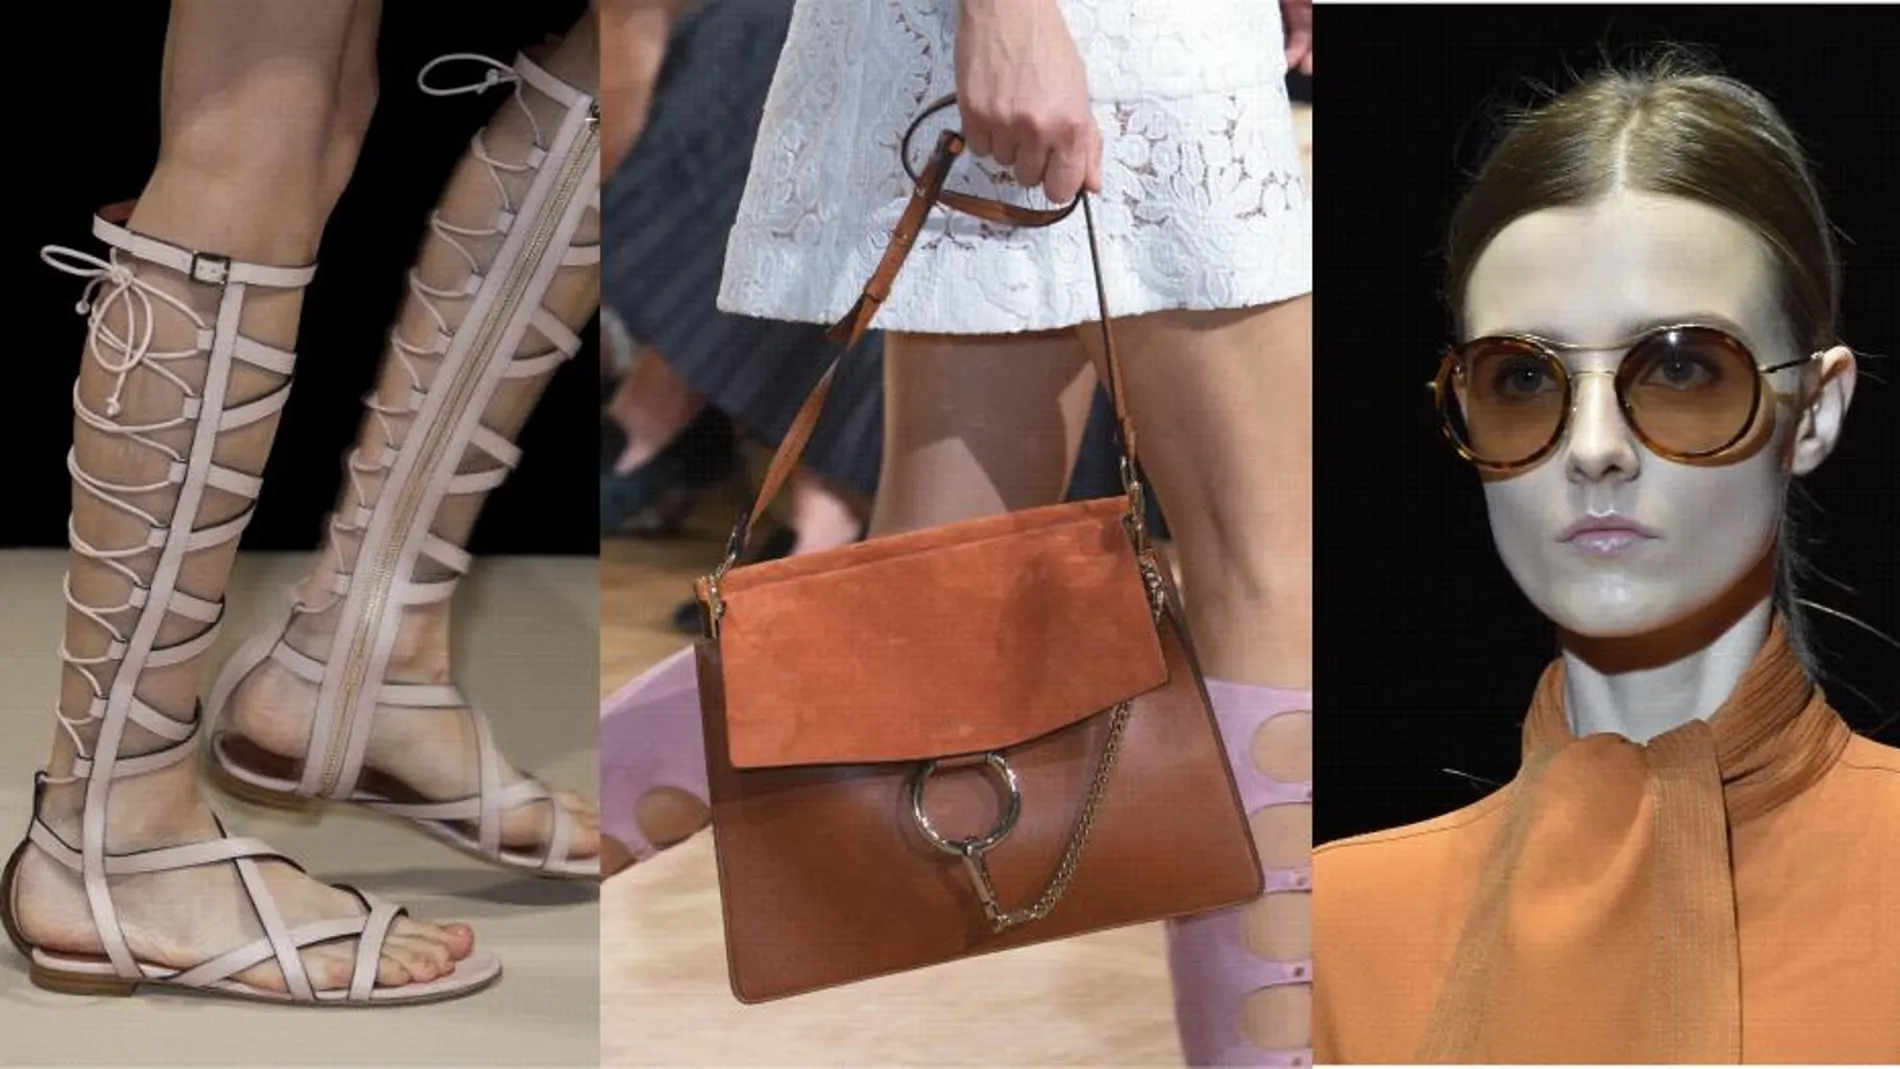 Gladiadoras, bolso de Chloe y gafas de Gucci.